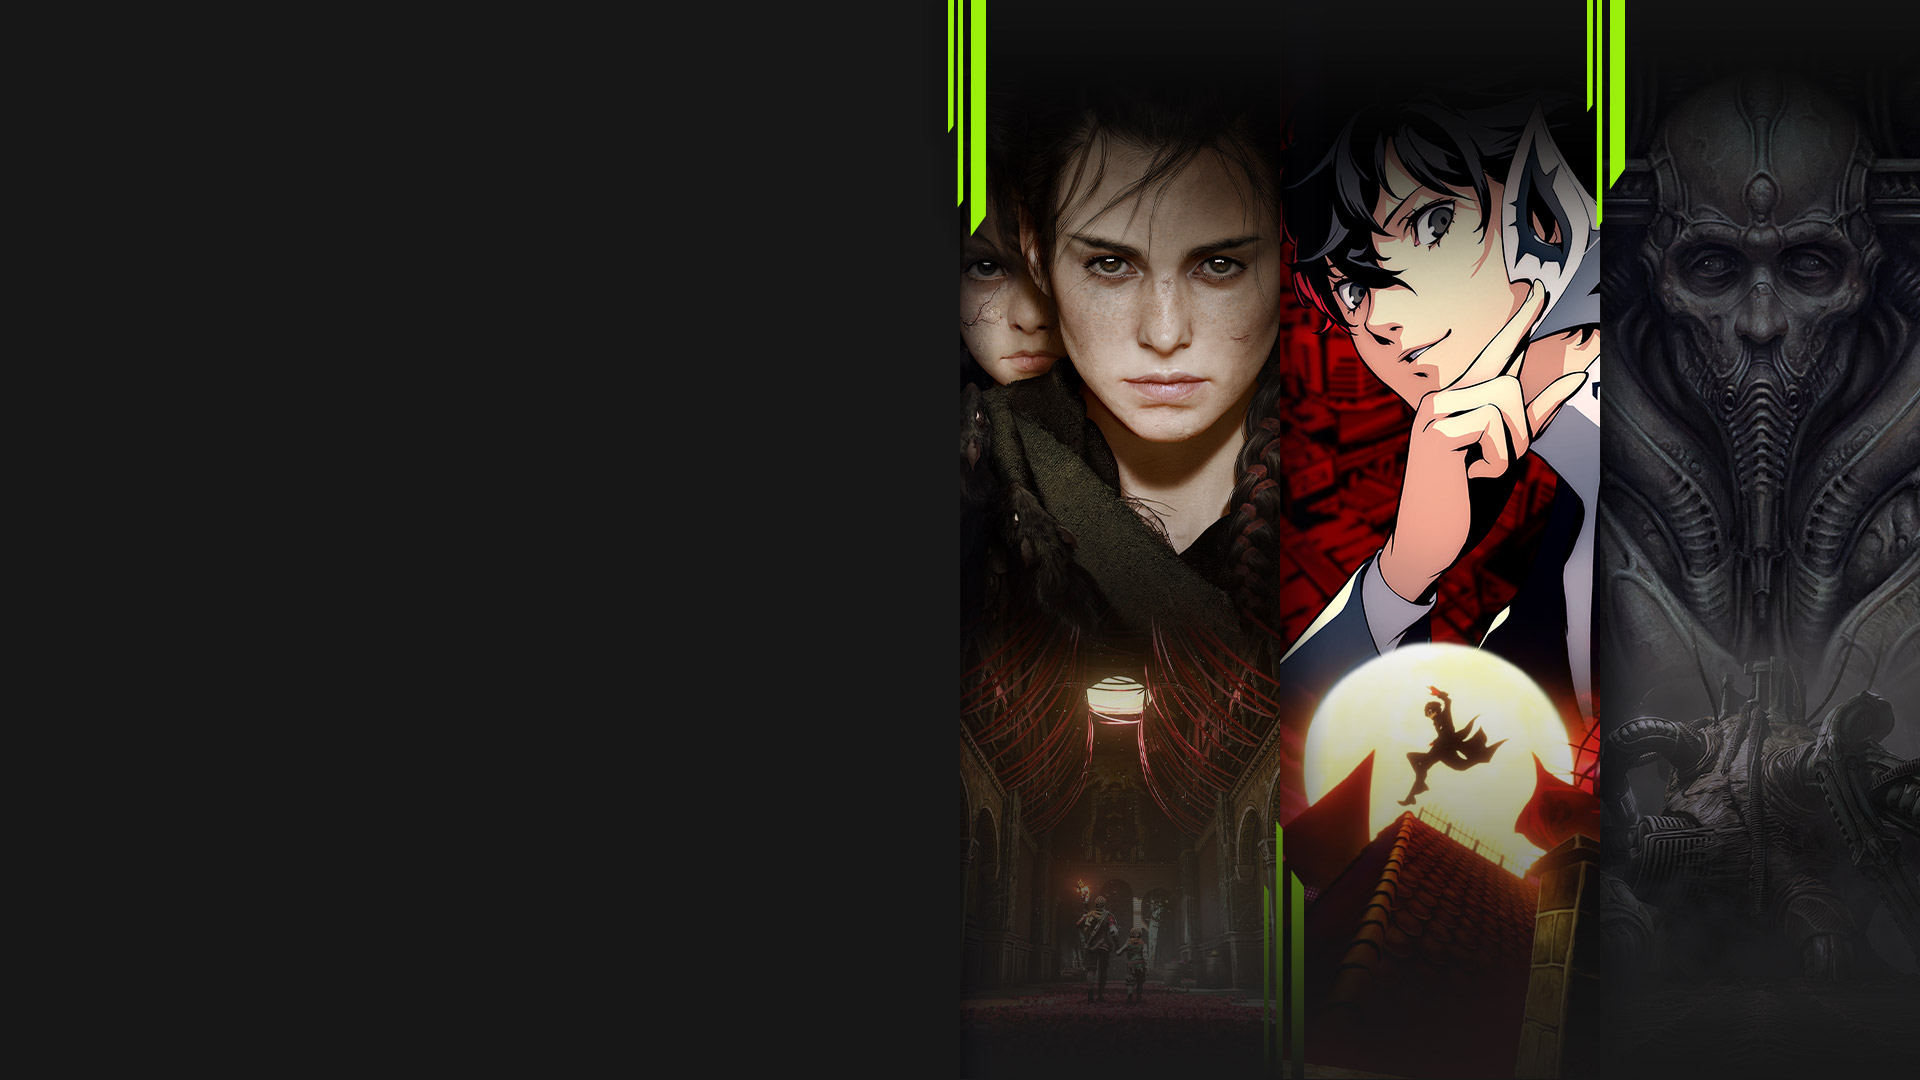 Arte del juego de varios títulos disponibles ahora con Xbox Game Pass, incluidos A Plague Tale: Requiem, Persona 5 Royal, Scorn y Chivalry 2